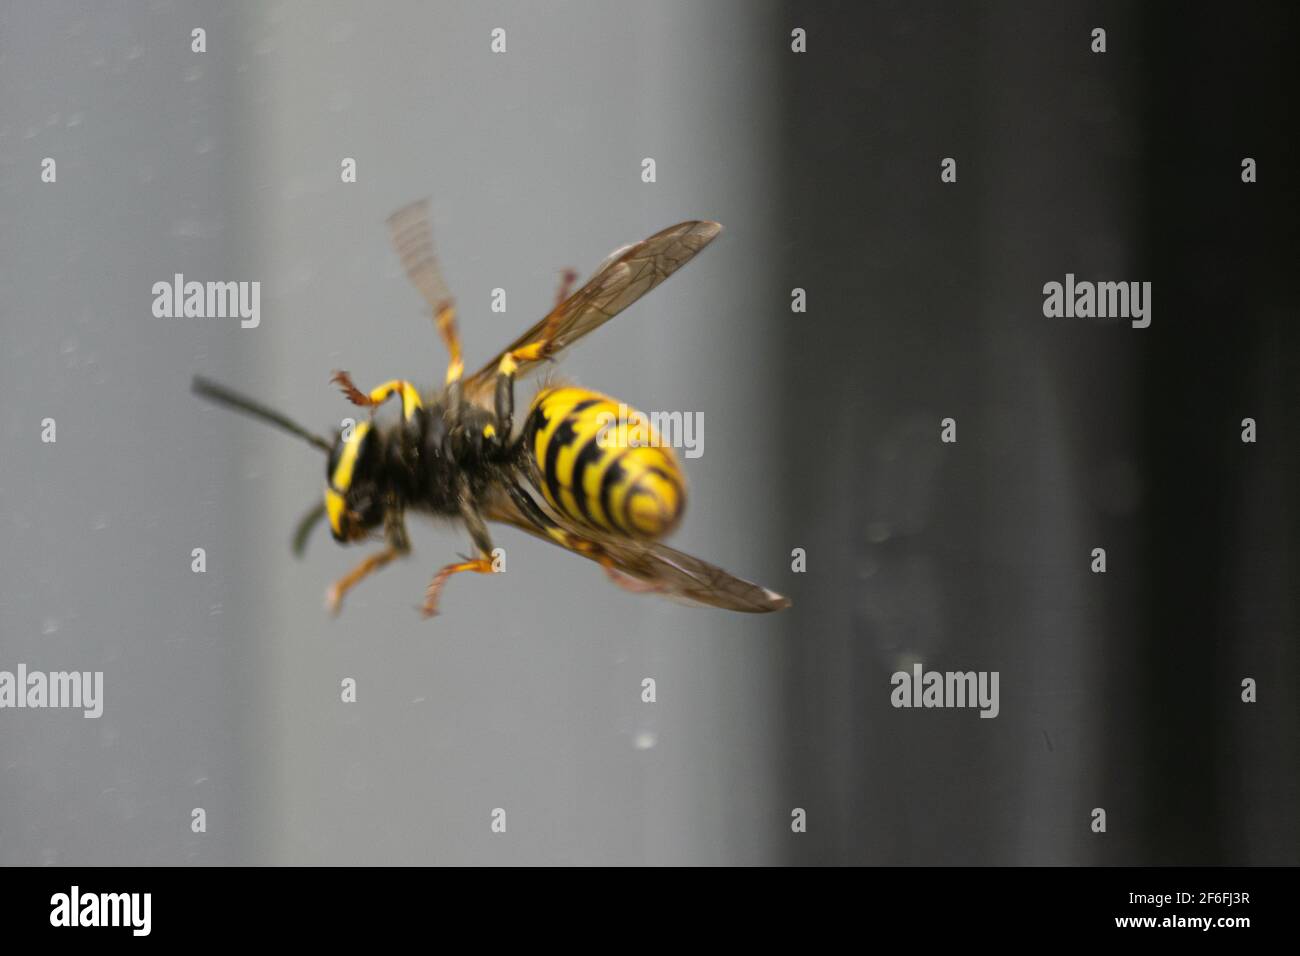 Große europäische Wespe, die in einem Glasfenster gefangen ist Stockfoto